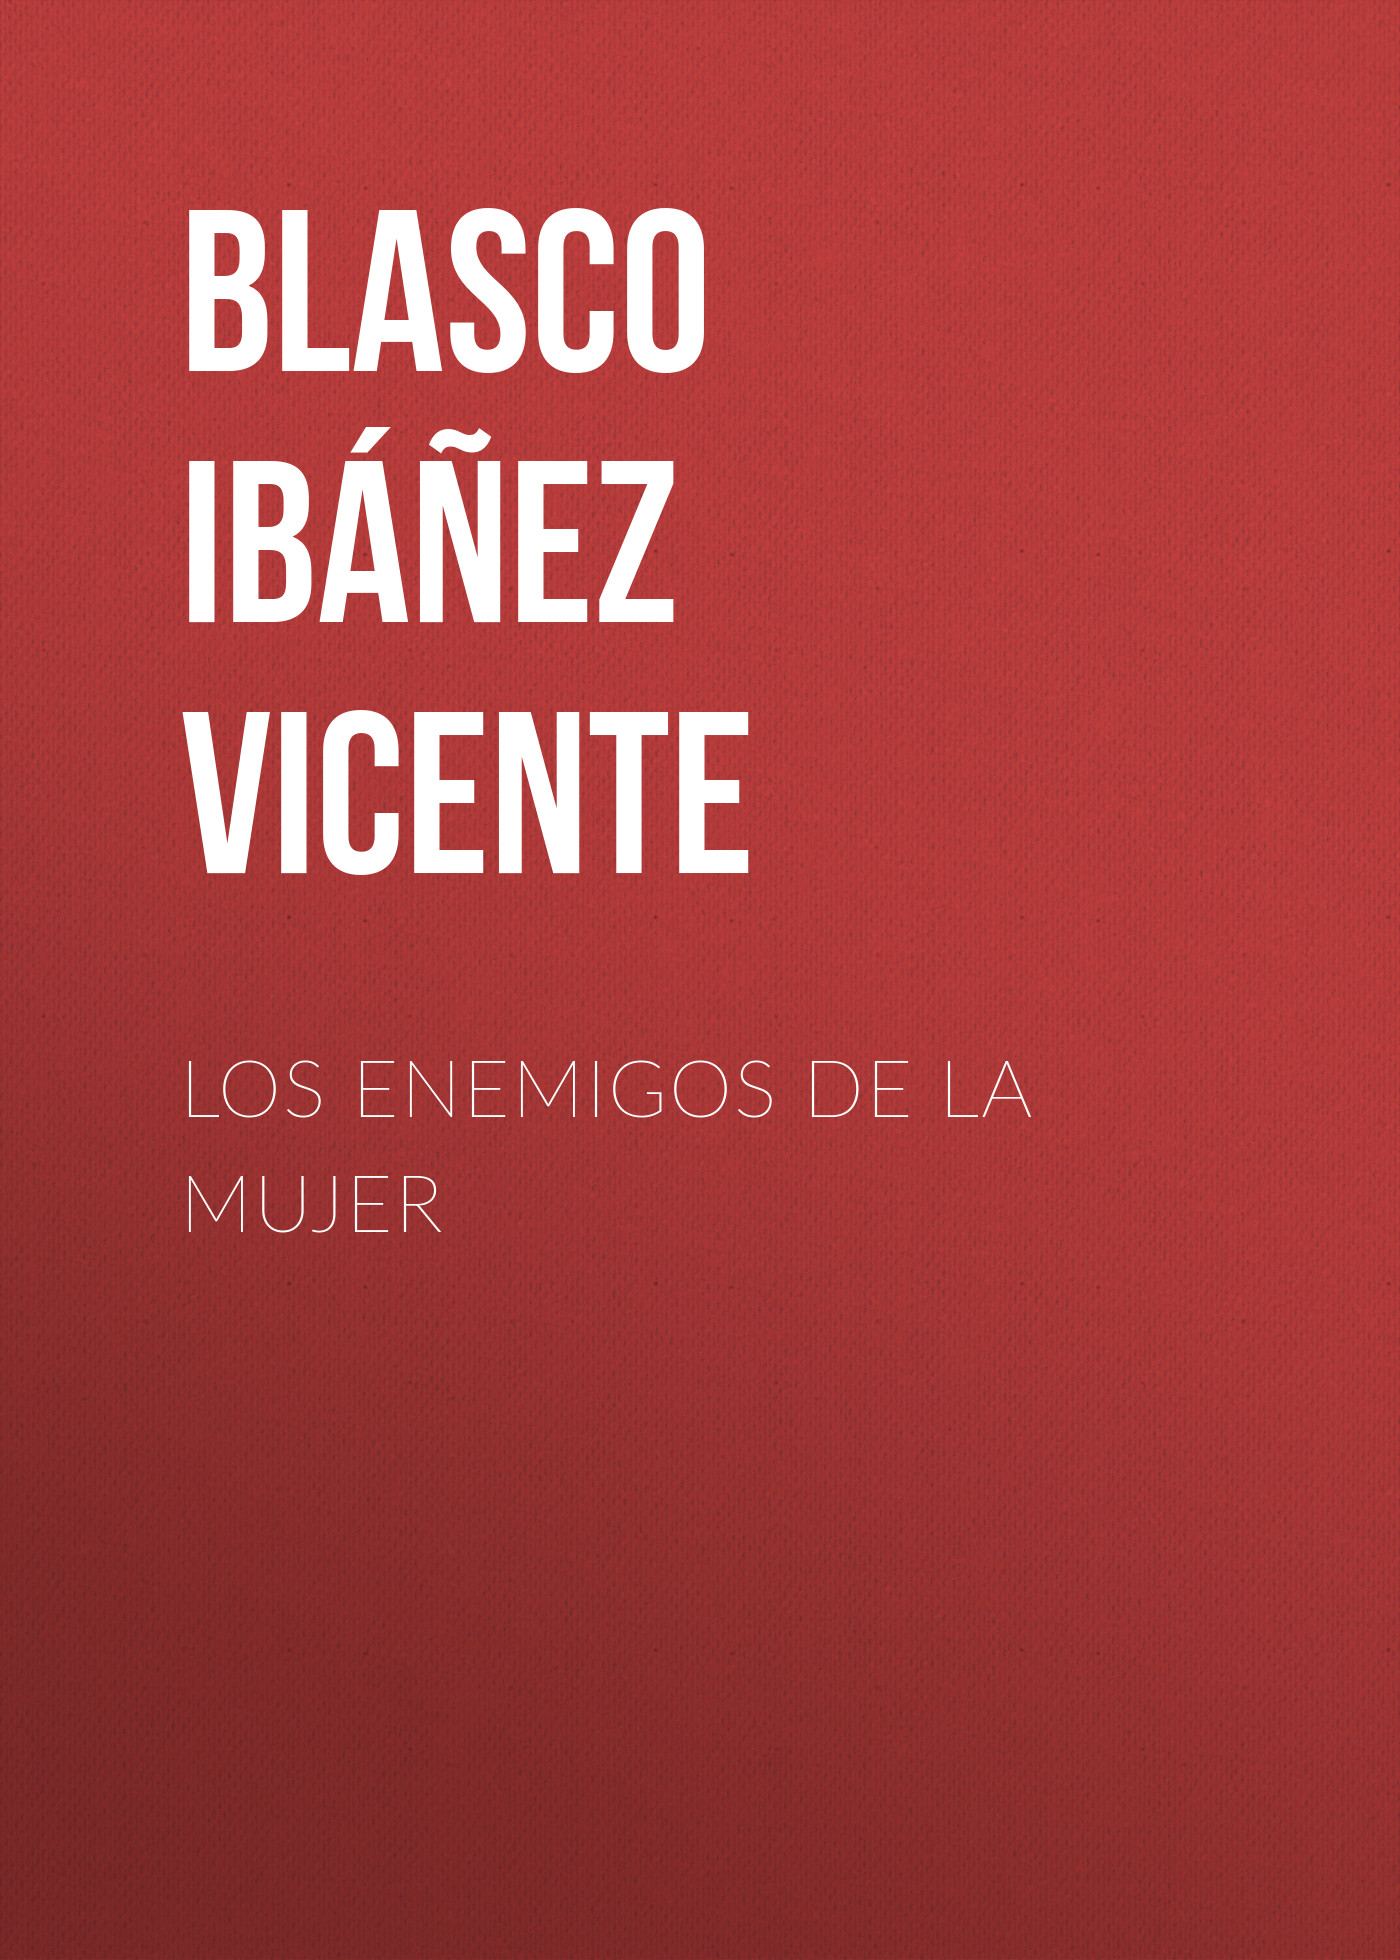 Книга Los enemigos de la mujer из серии , созданная Vicente Blasco Ibáñez, может относится к жанру Иностранные языки, Зарубежная старинная литература, Зарубежная классика. Стоимость электронной книги Los enemigos de la mujer с идентификатором 24169036 составляет 0.90 руб.